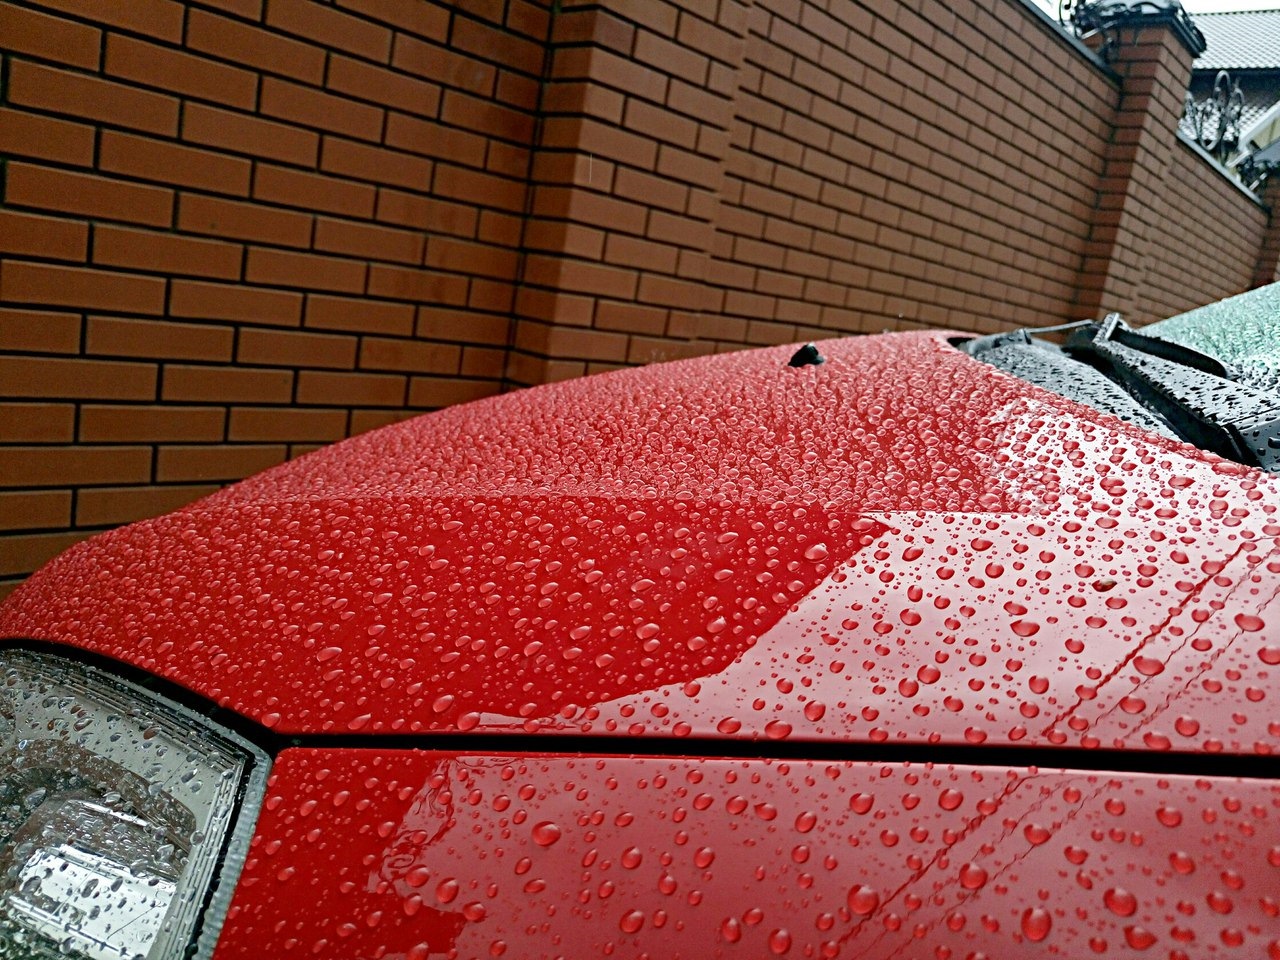 Защита автомобиля от дождя. Антидождь Нанопротек. Машина под дождем. Авито красный дождь машина.